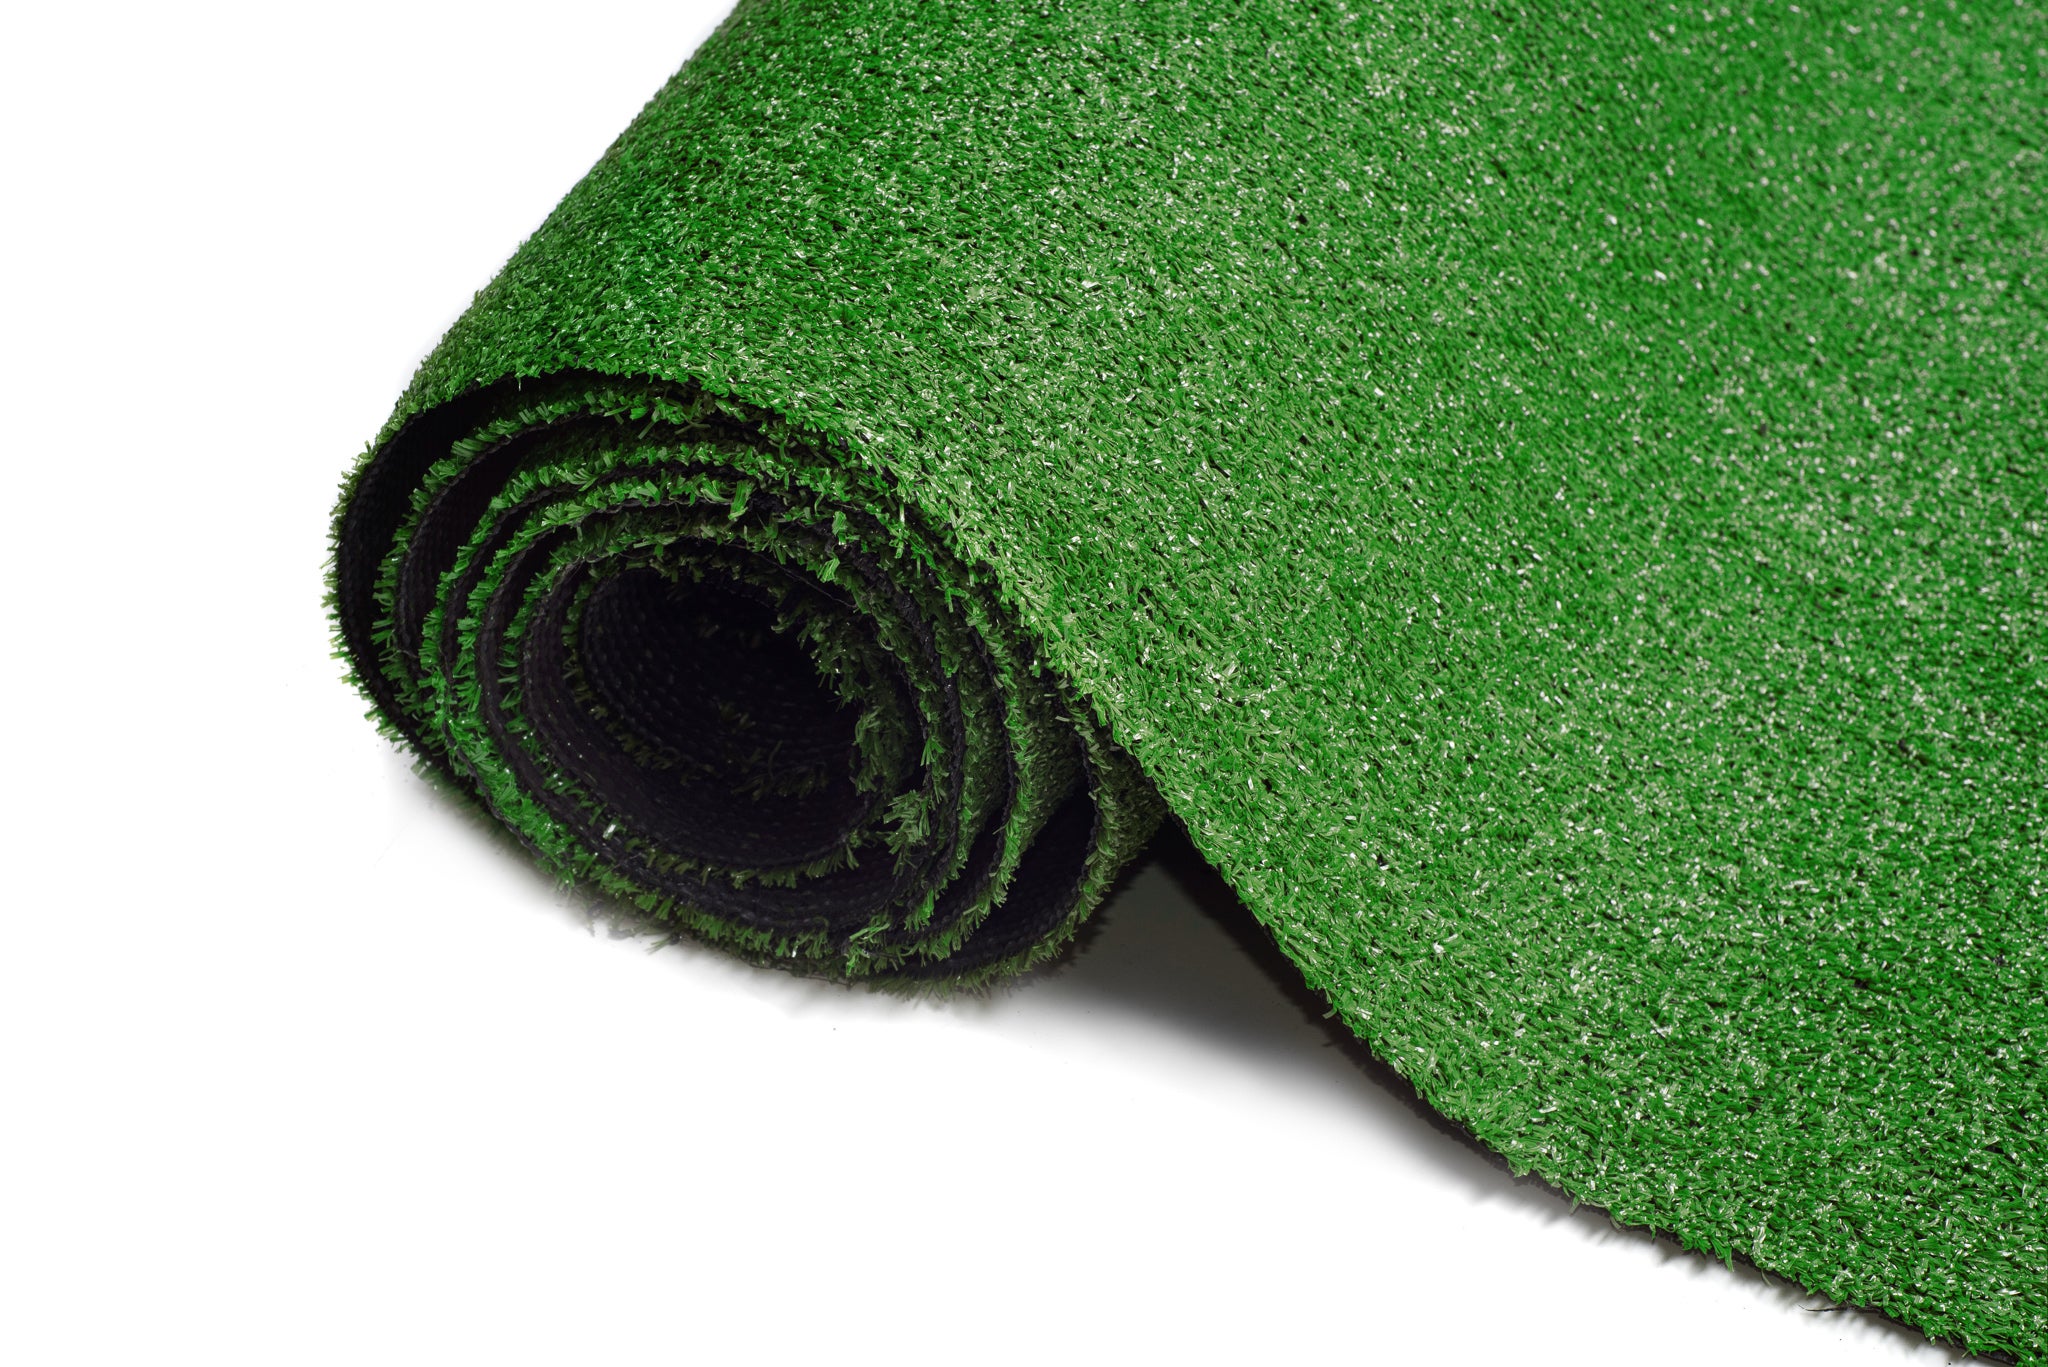 Tapis d'herbe verte synthétique 22 mm faux prato dans le jardin Rotolo